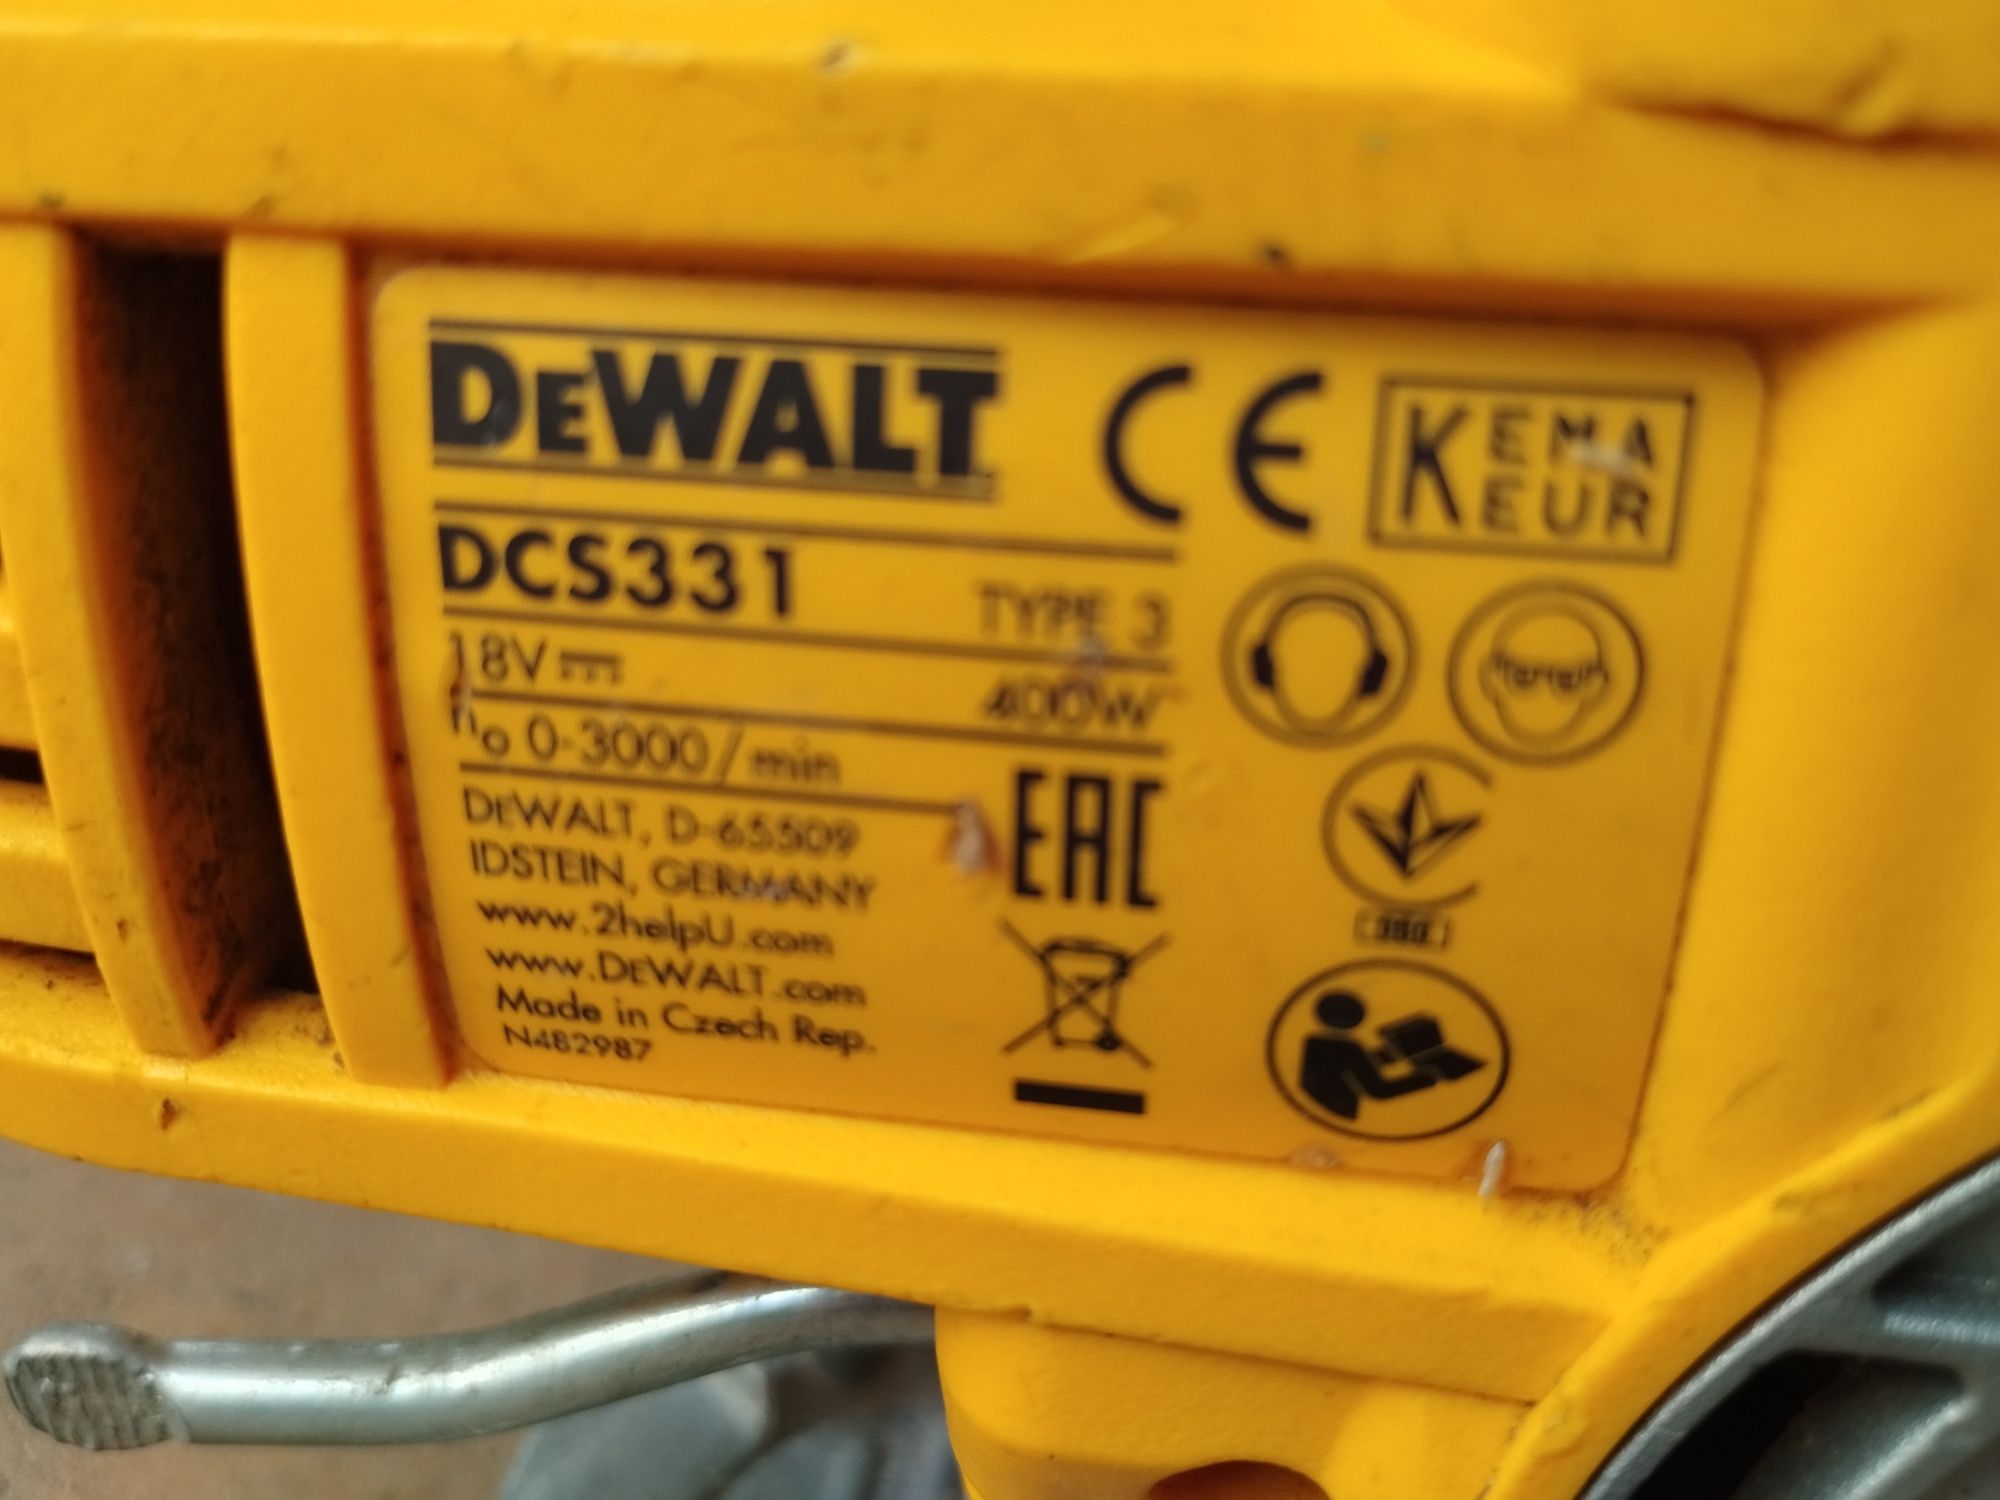 Dewalt DCS331 traforaj electric